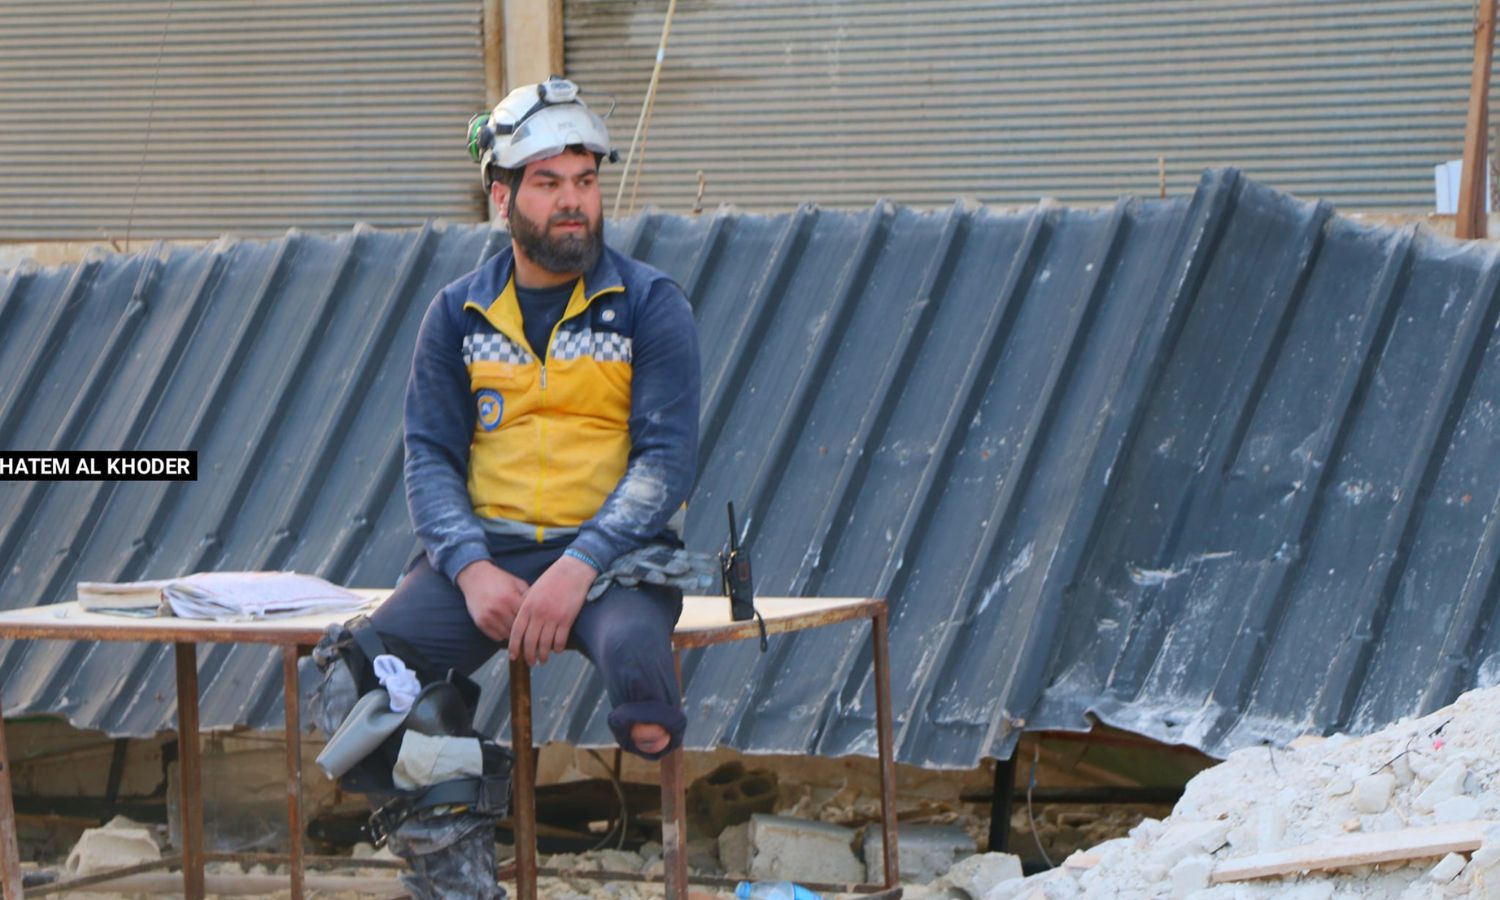 المتطوع في "الدفاع المدني السوري" حسن الطلفاح يجلس للراحة بعد عمليات إنقاذ العالقين تحت الأنقاض إثر الزلزال بريف إدلب- شباط 2023 (حاتم الخضر/ فيس بوك)